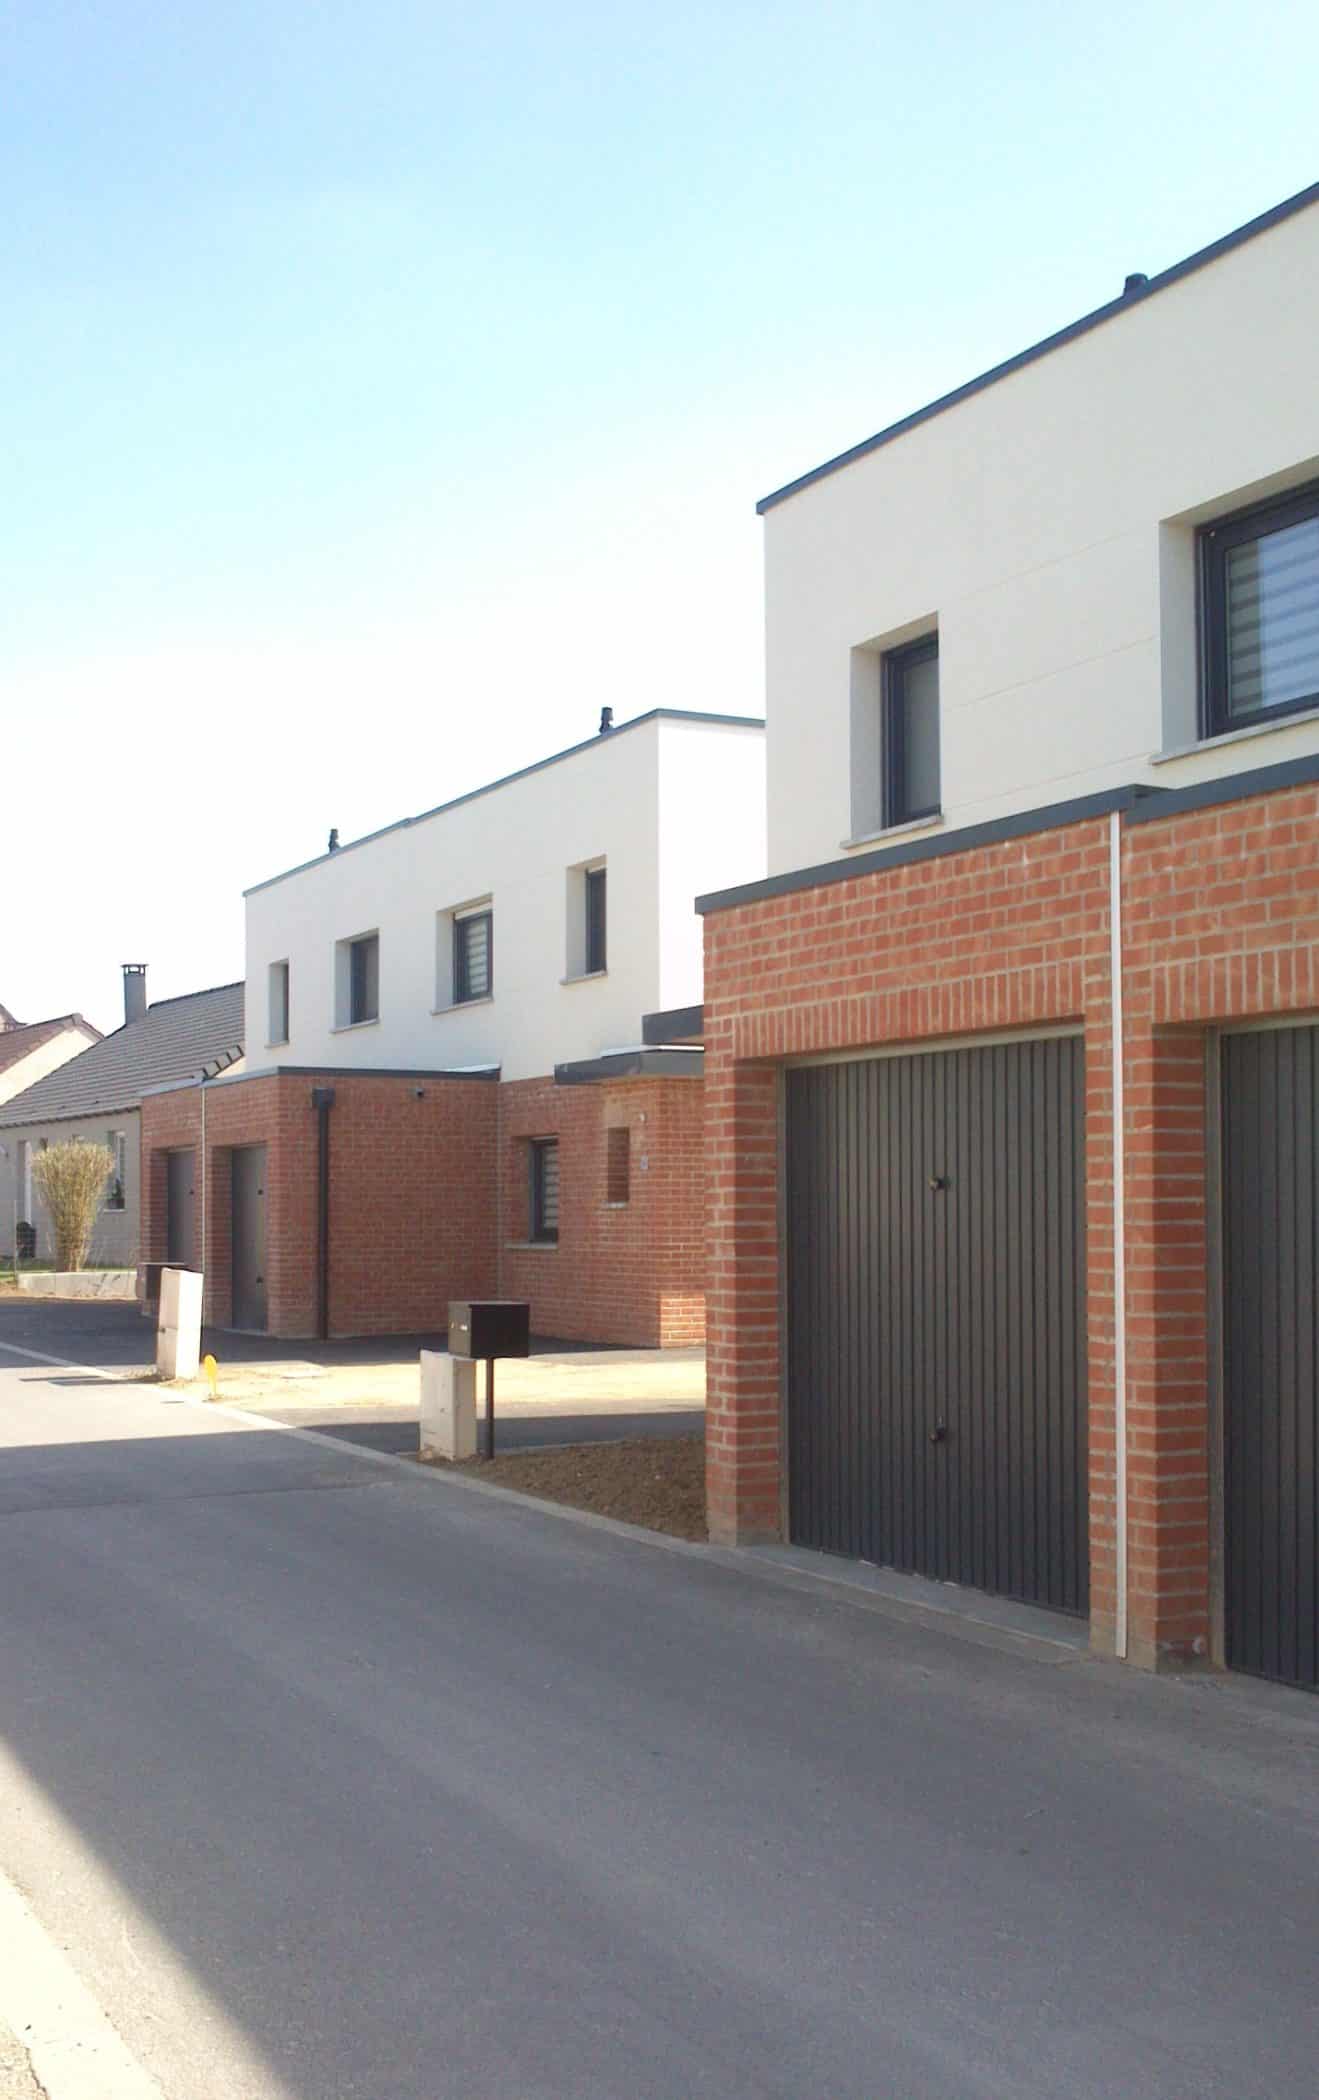 Nicolas Delannoy architecte -10 logements individuels - accession à la propriété pour SRCJ - Courcelles-les-Lens PPALE